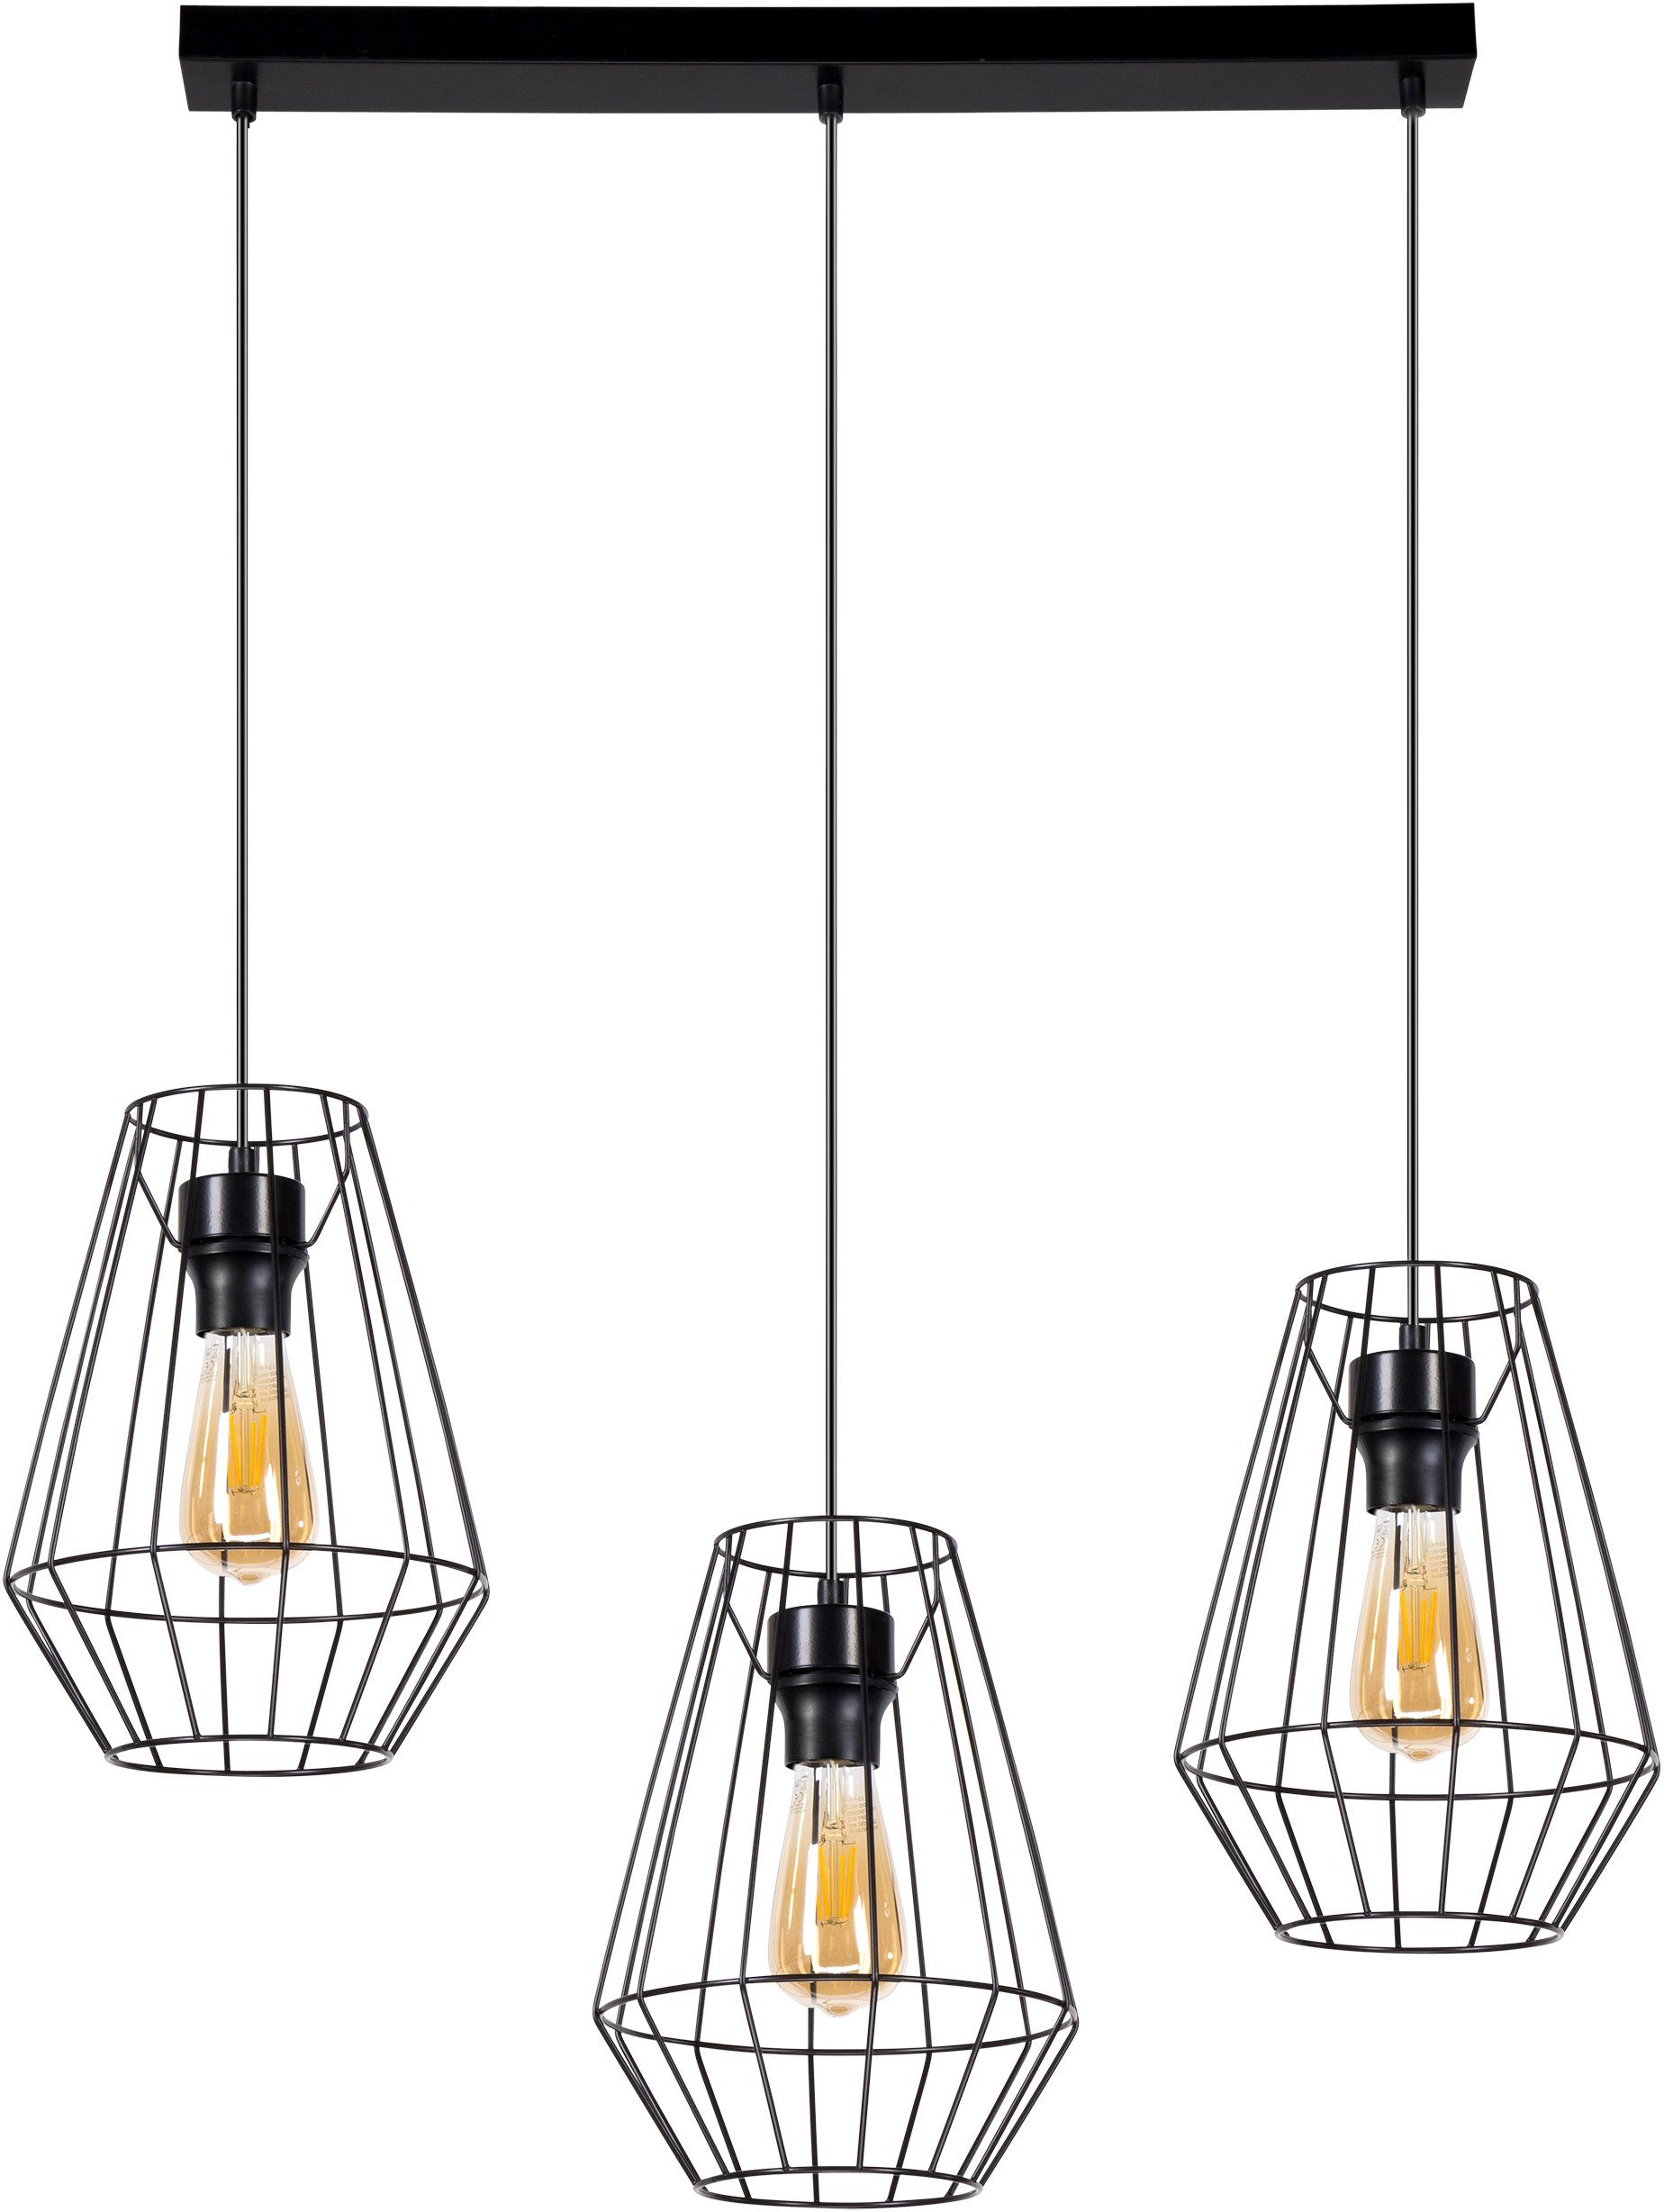 BRITOP LIGHTING Hanglamp ENDORFINA Decoratieve lamp van metaal, bijpassende LM E27 / exclusief, Made in Europe (1 stuk)